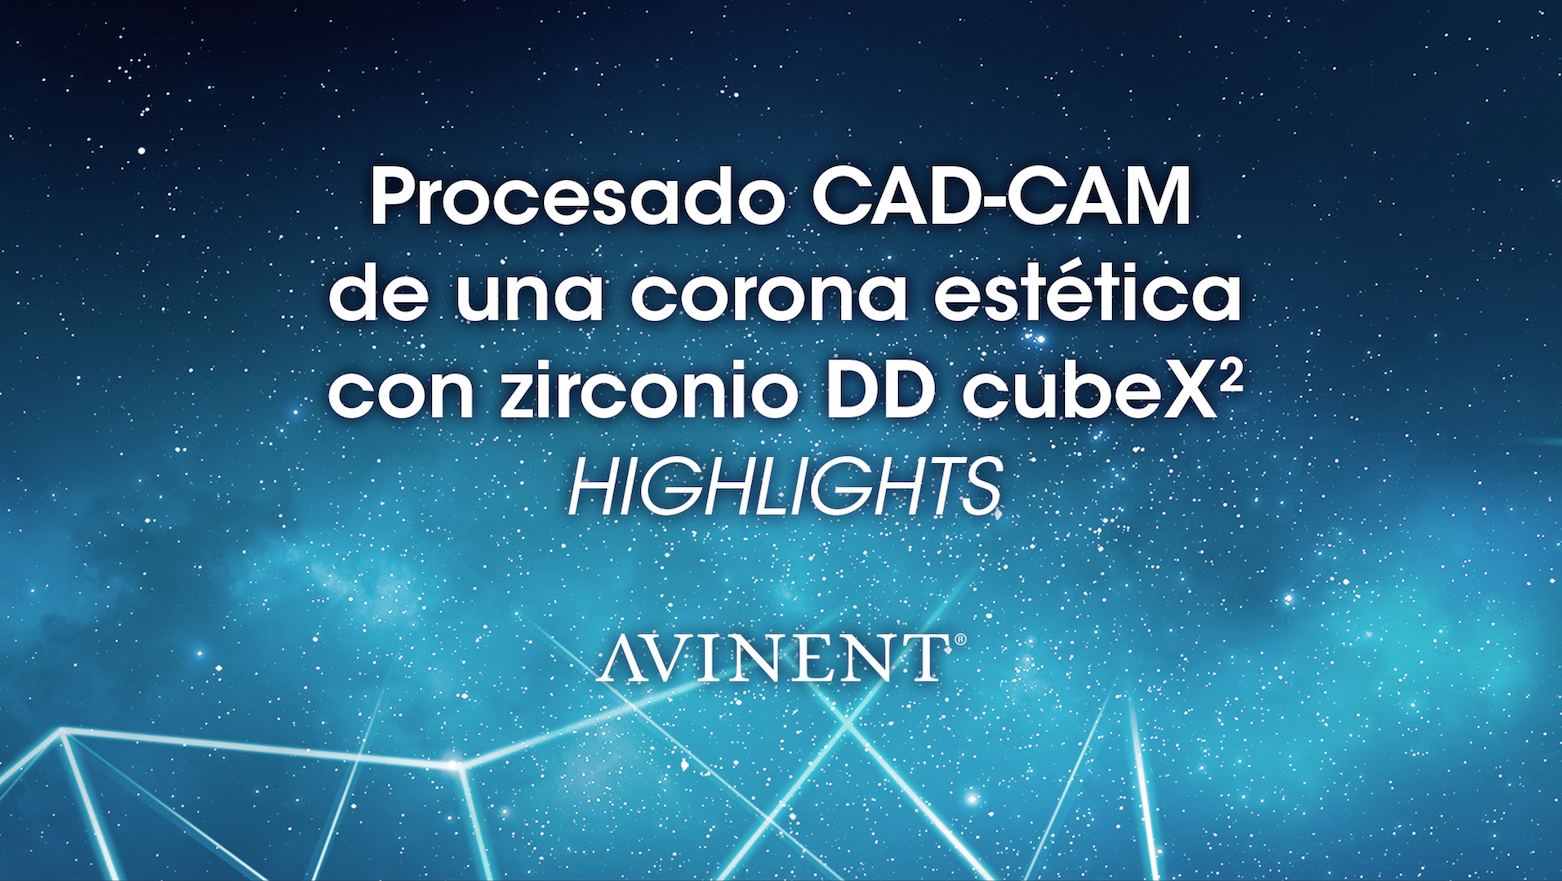 Procesado CAD-CAM de una corona estética con zirconio DD cubeX2